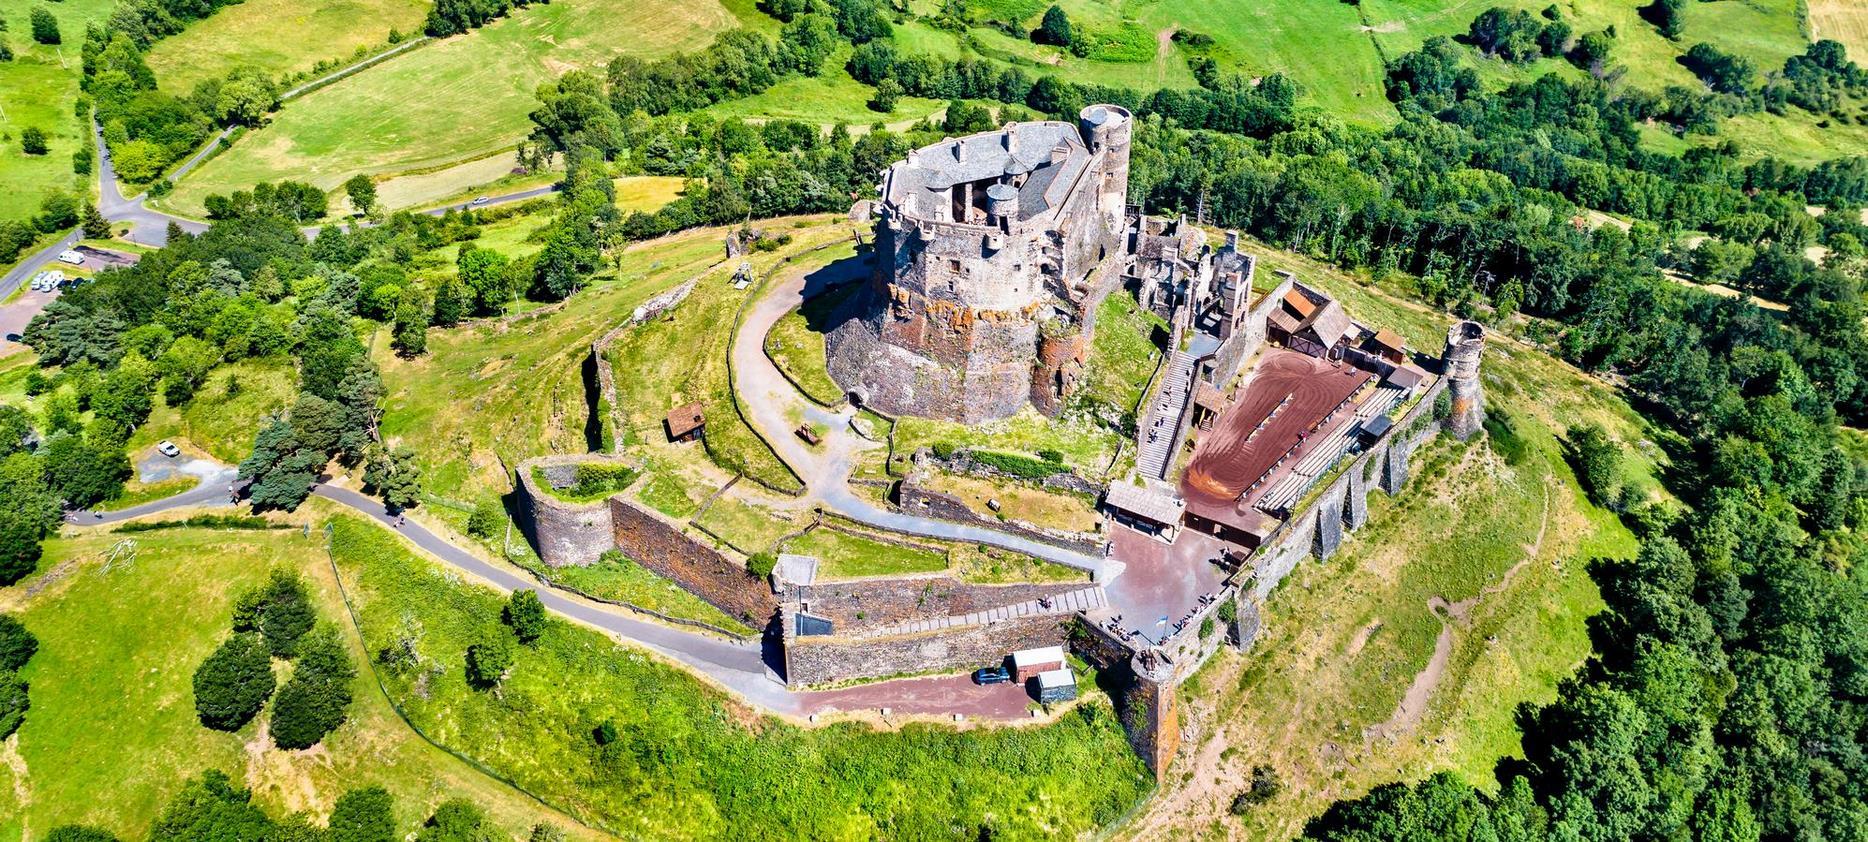 Vur Aerienne du chateau de Murol, chateau fort en Auvergne